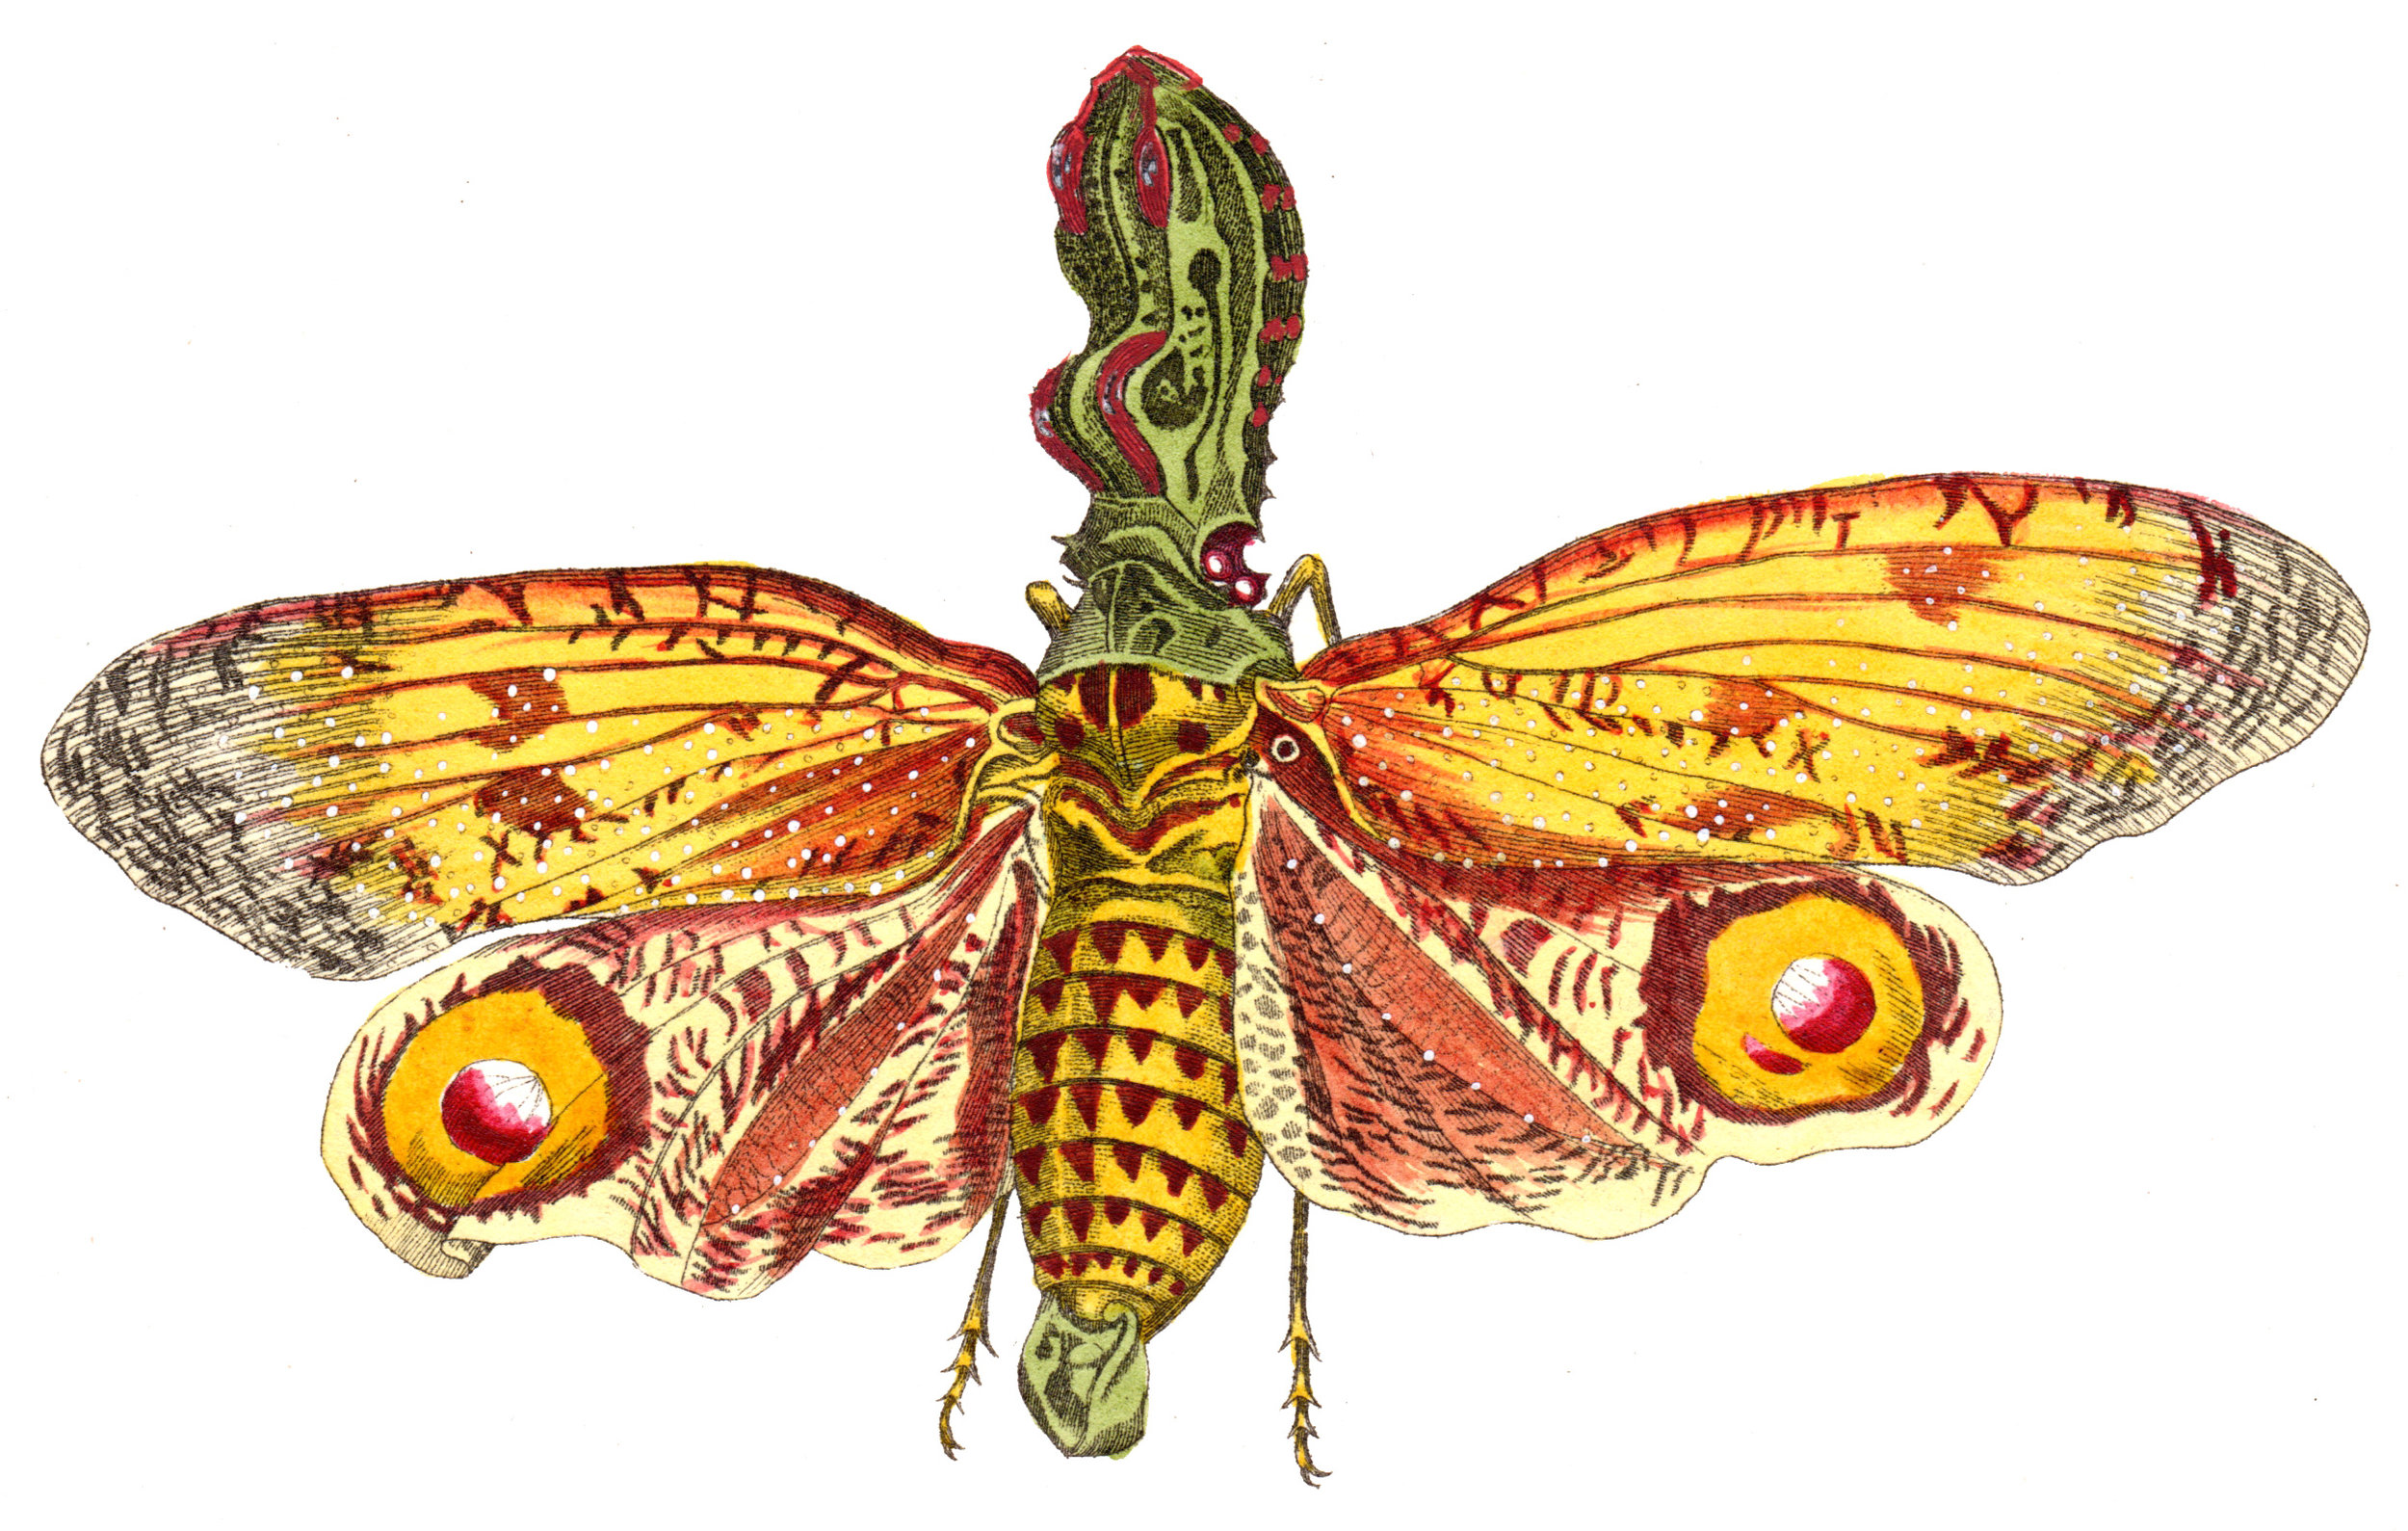 Shaw, George / Nodder, Frederick & Robert P. – Butterflies, Caterpillars, etc.